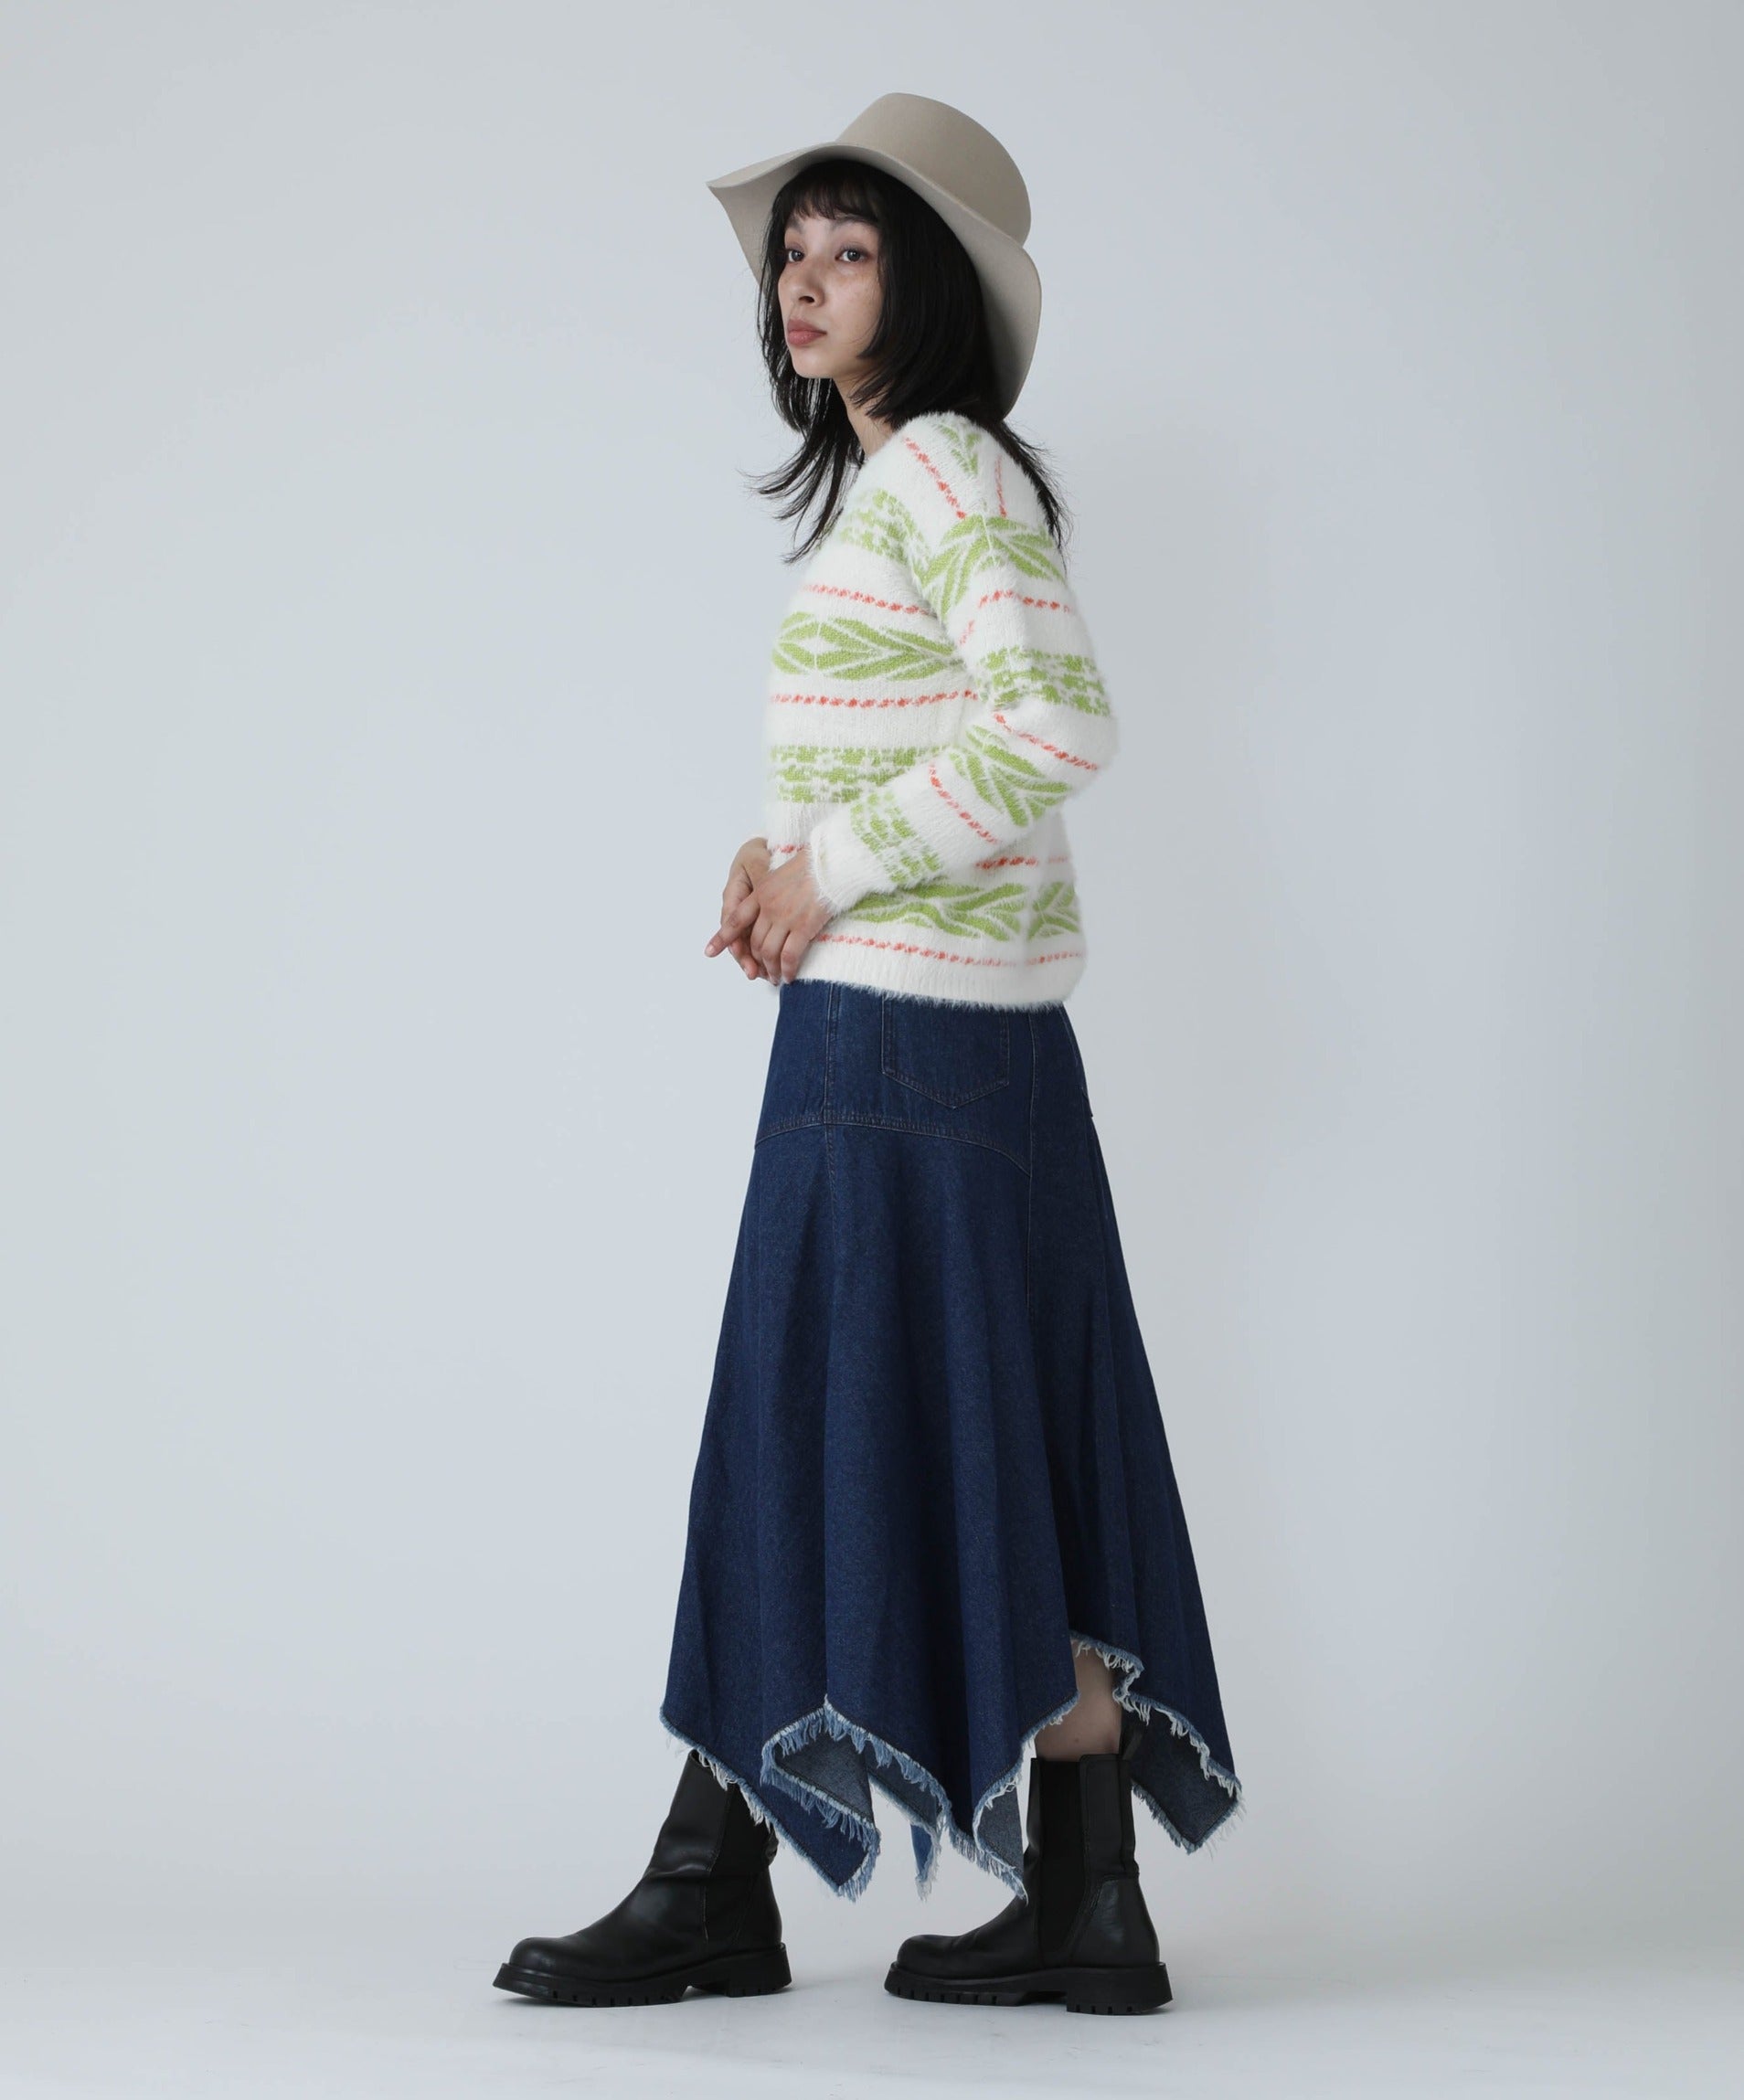 ソールヒール形ピンヒール【Christian Dior】western ジャガード knit boot